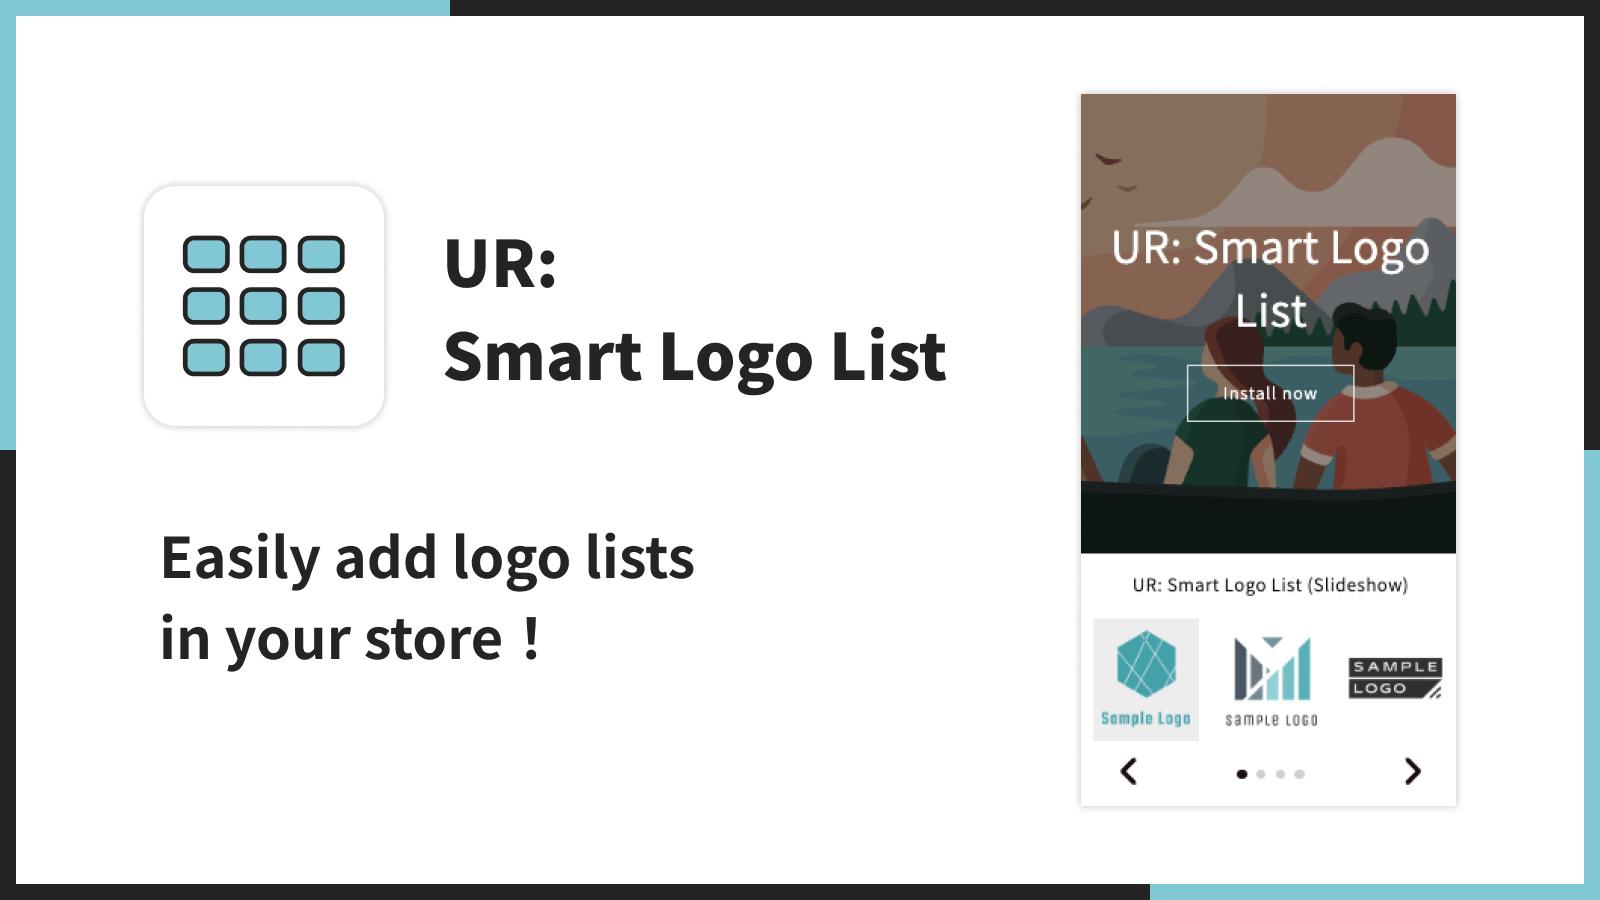 UR: Smart Logo List | Adicione facilmente listas de logotipos na sua loja！